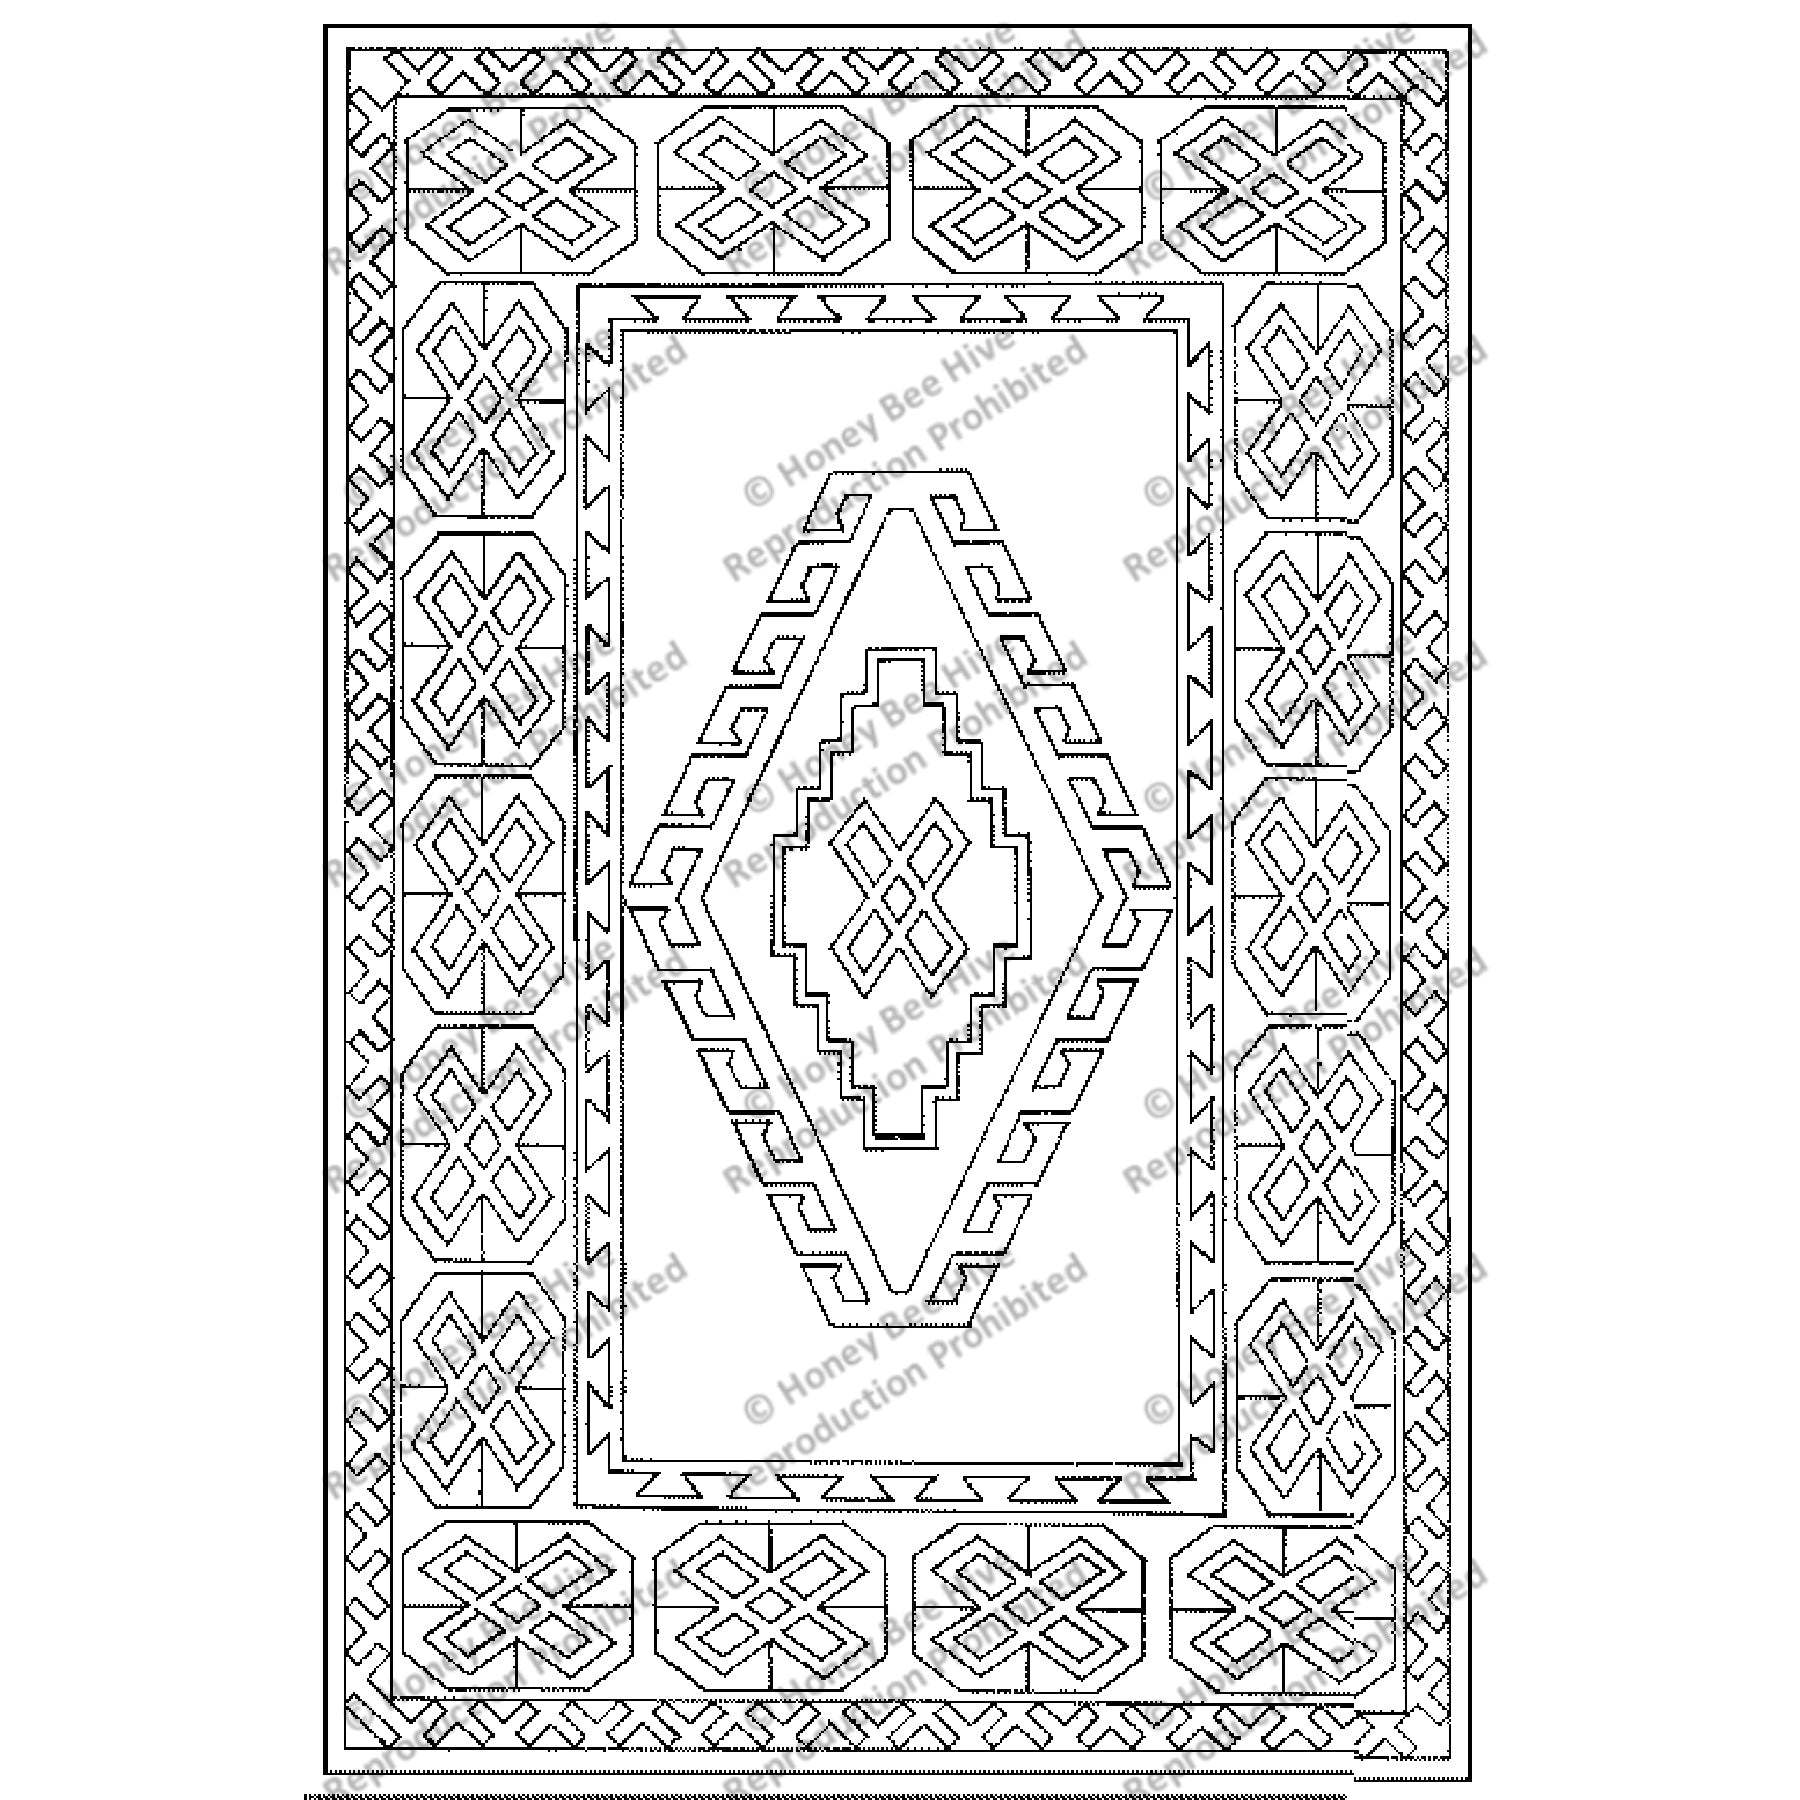 Yuruk, rug hooking pattern